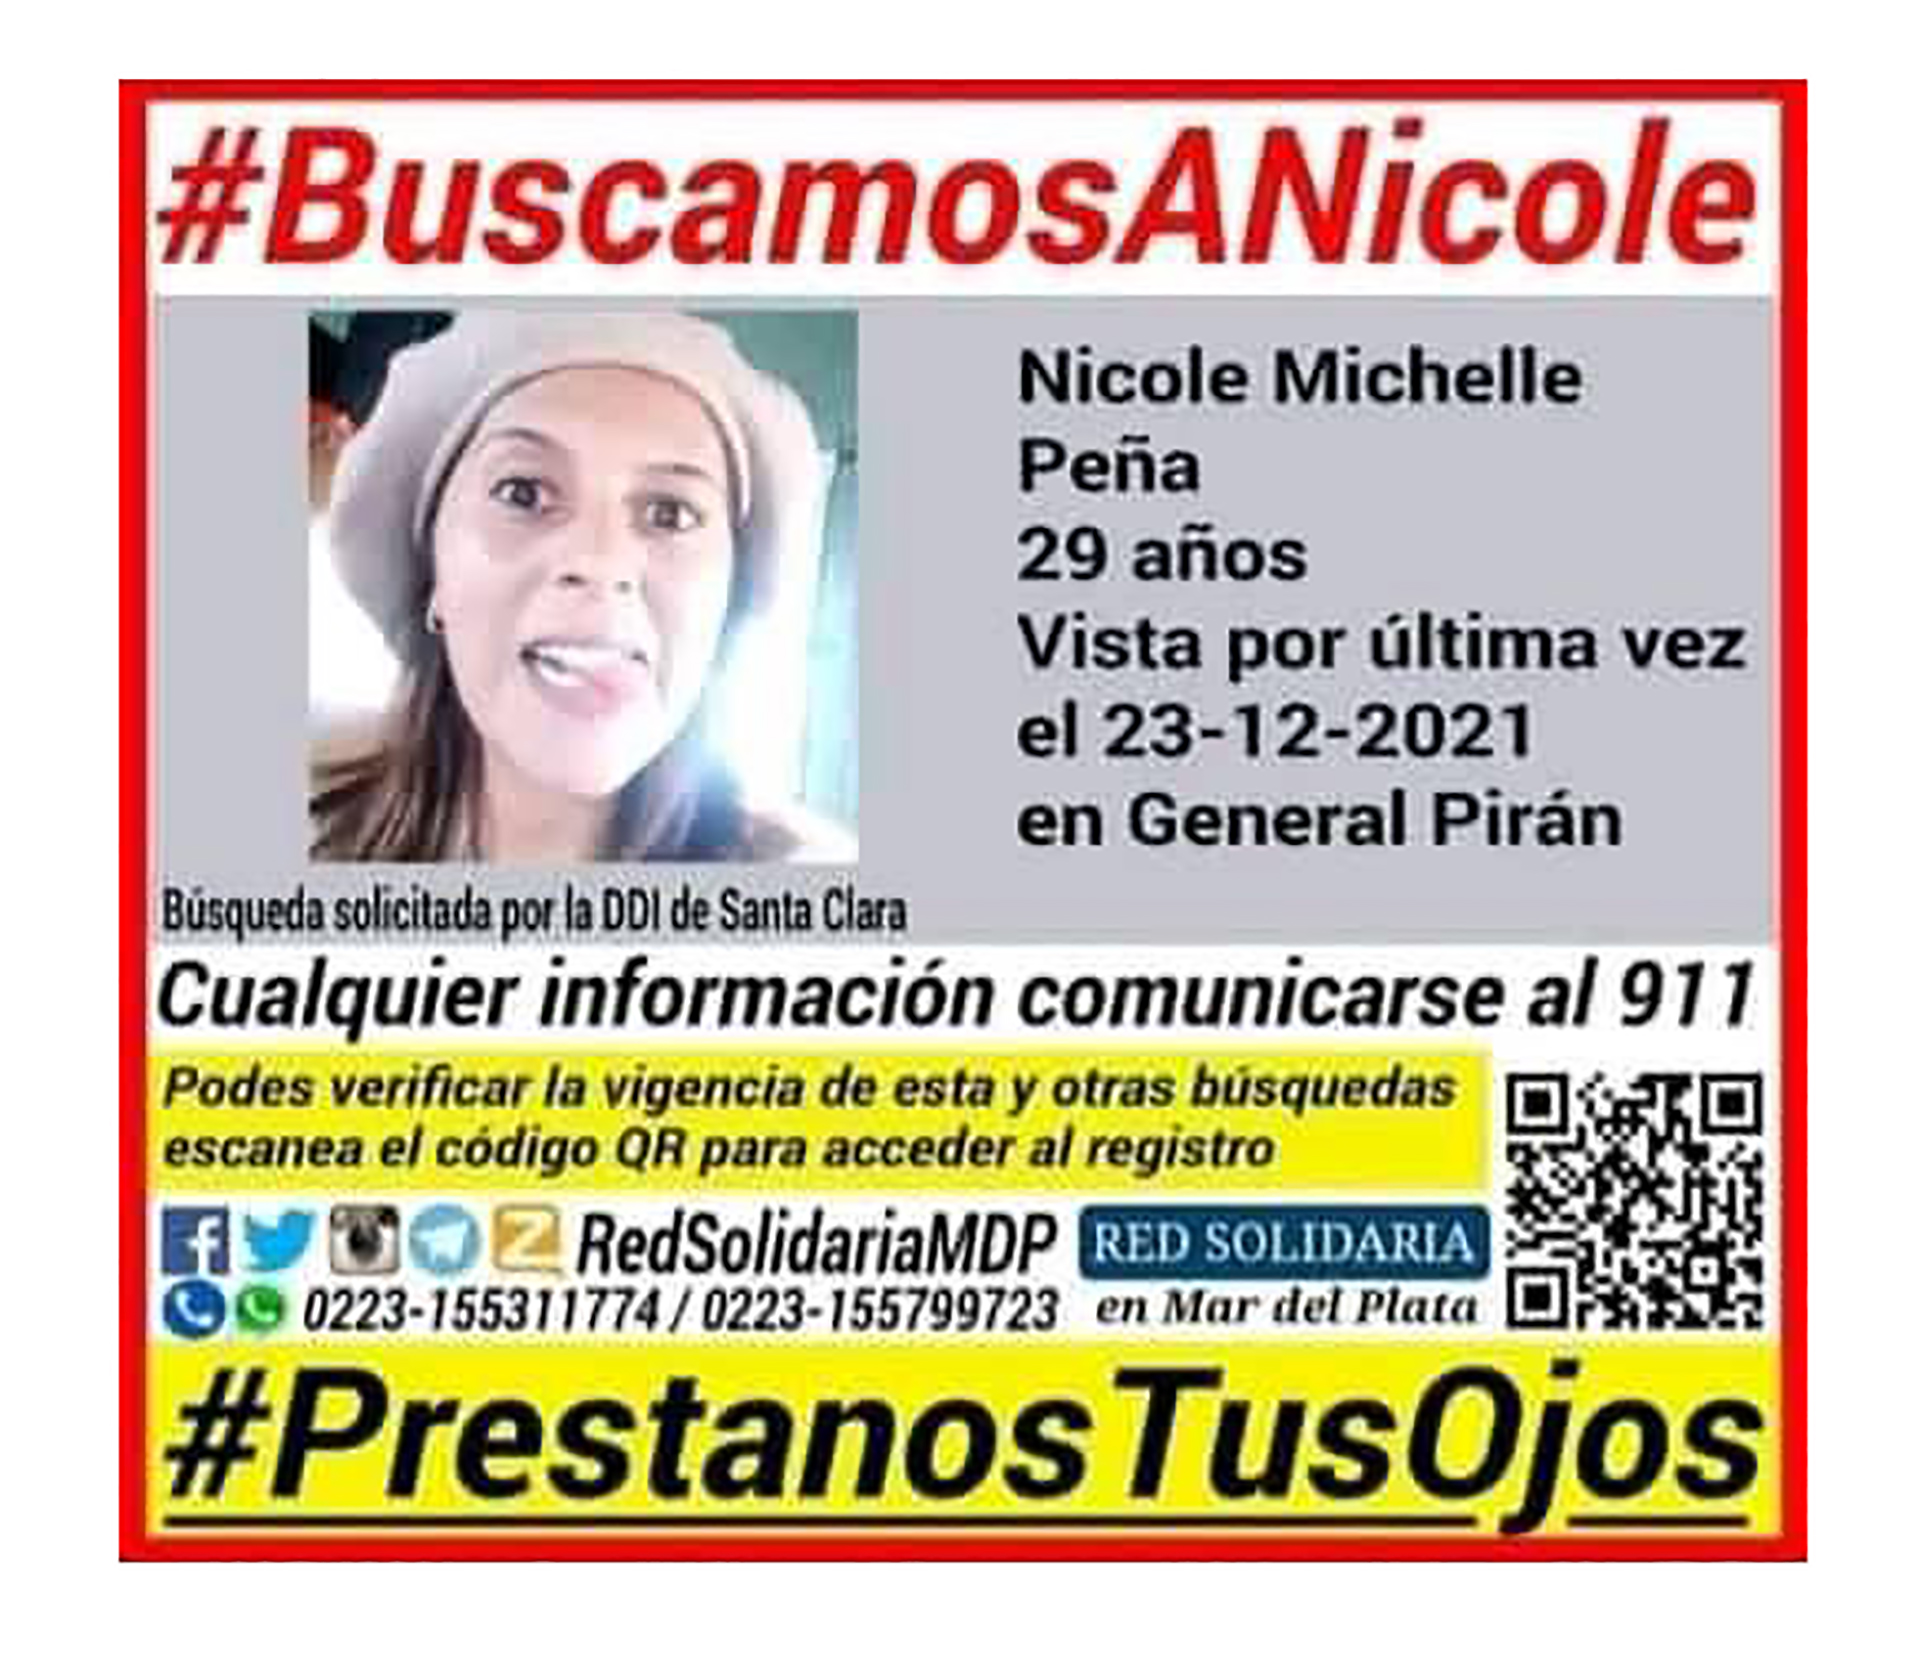 El flyer de la búsqueda de Nicole